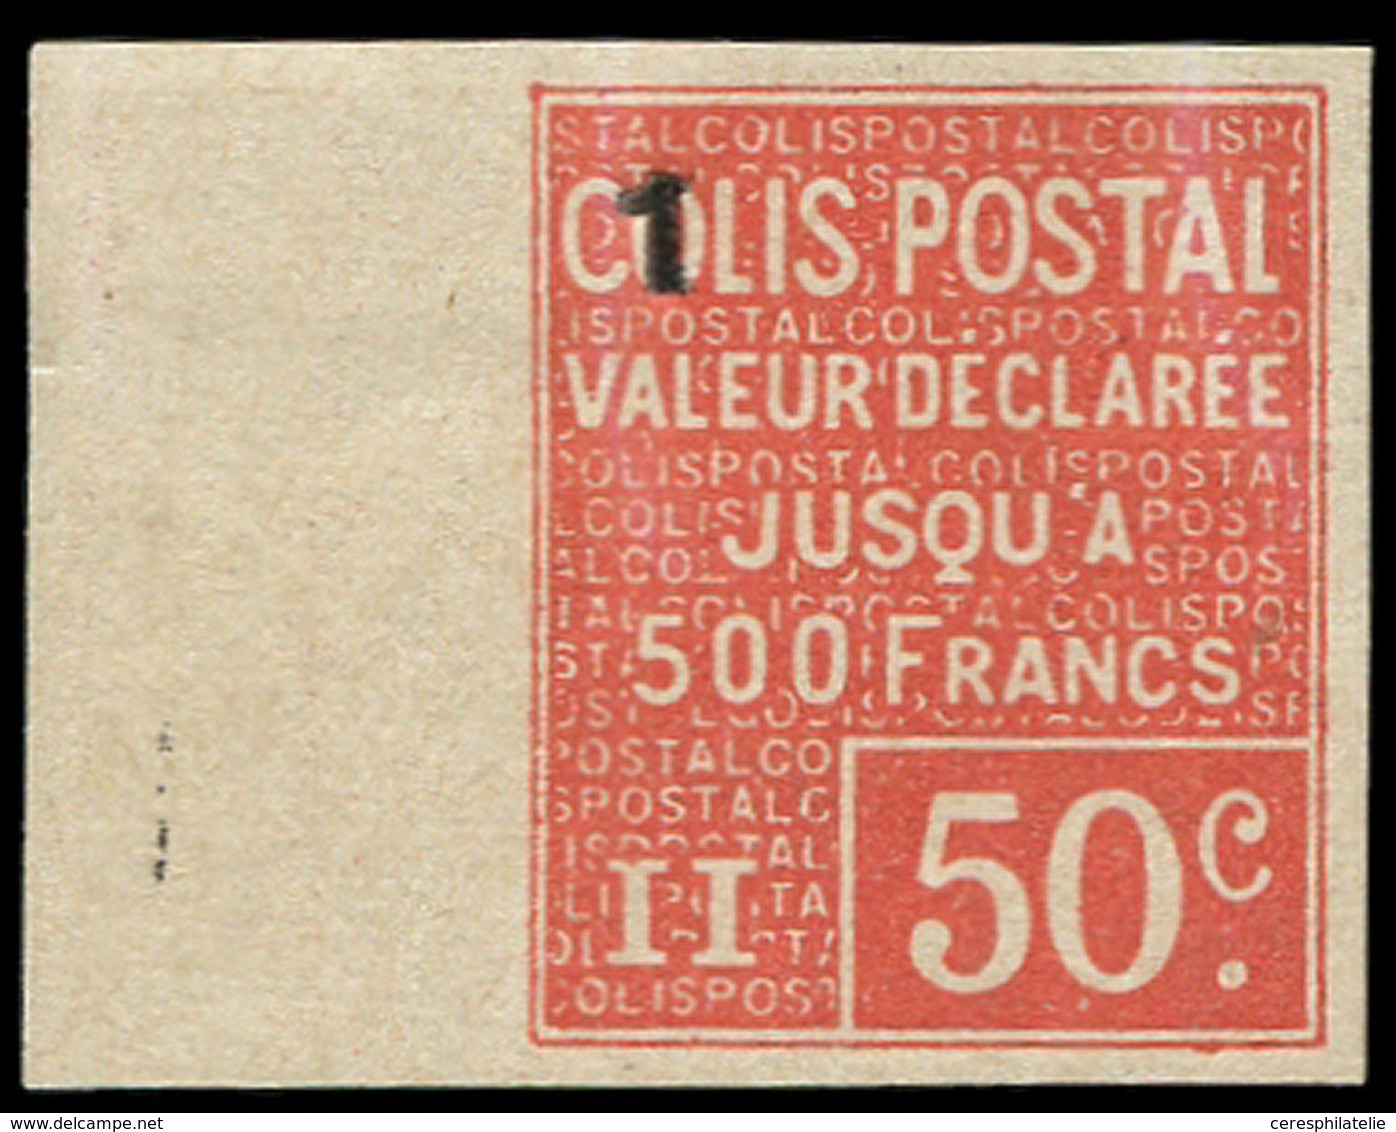 * COLIS POSTAUX  (N° Et Cote Maury) - 55   50c. Rouge, Surch. 1, NON DENTELE Bdf, TB - Nuovi